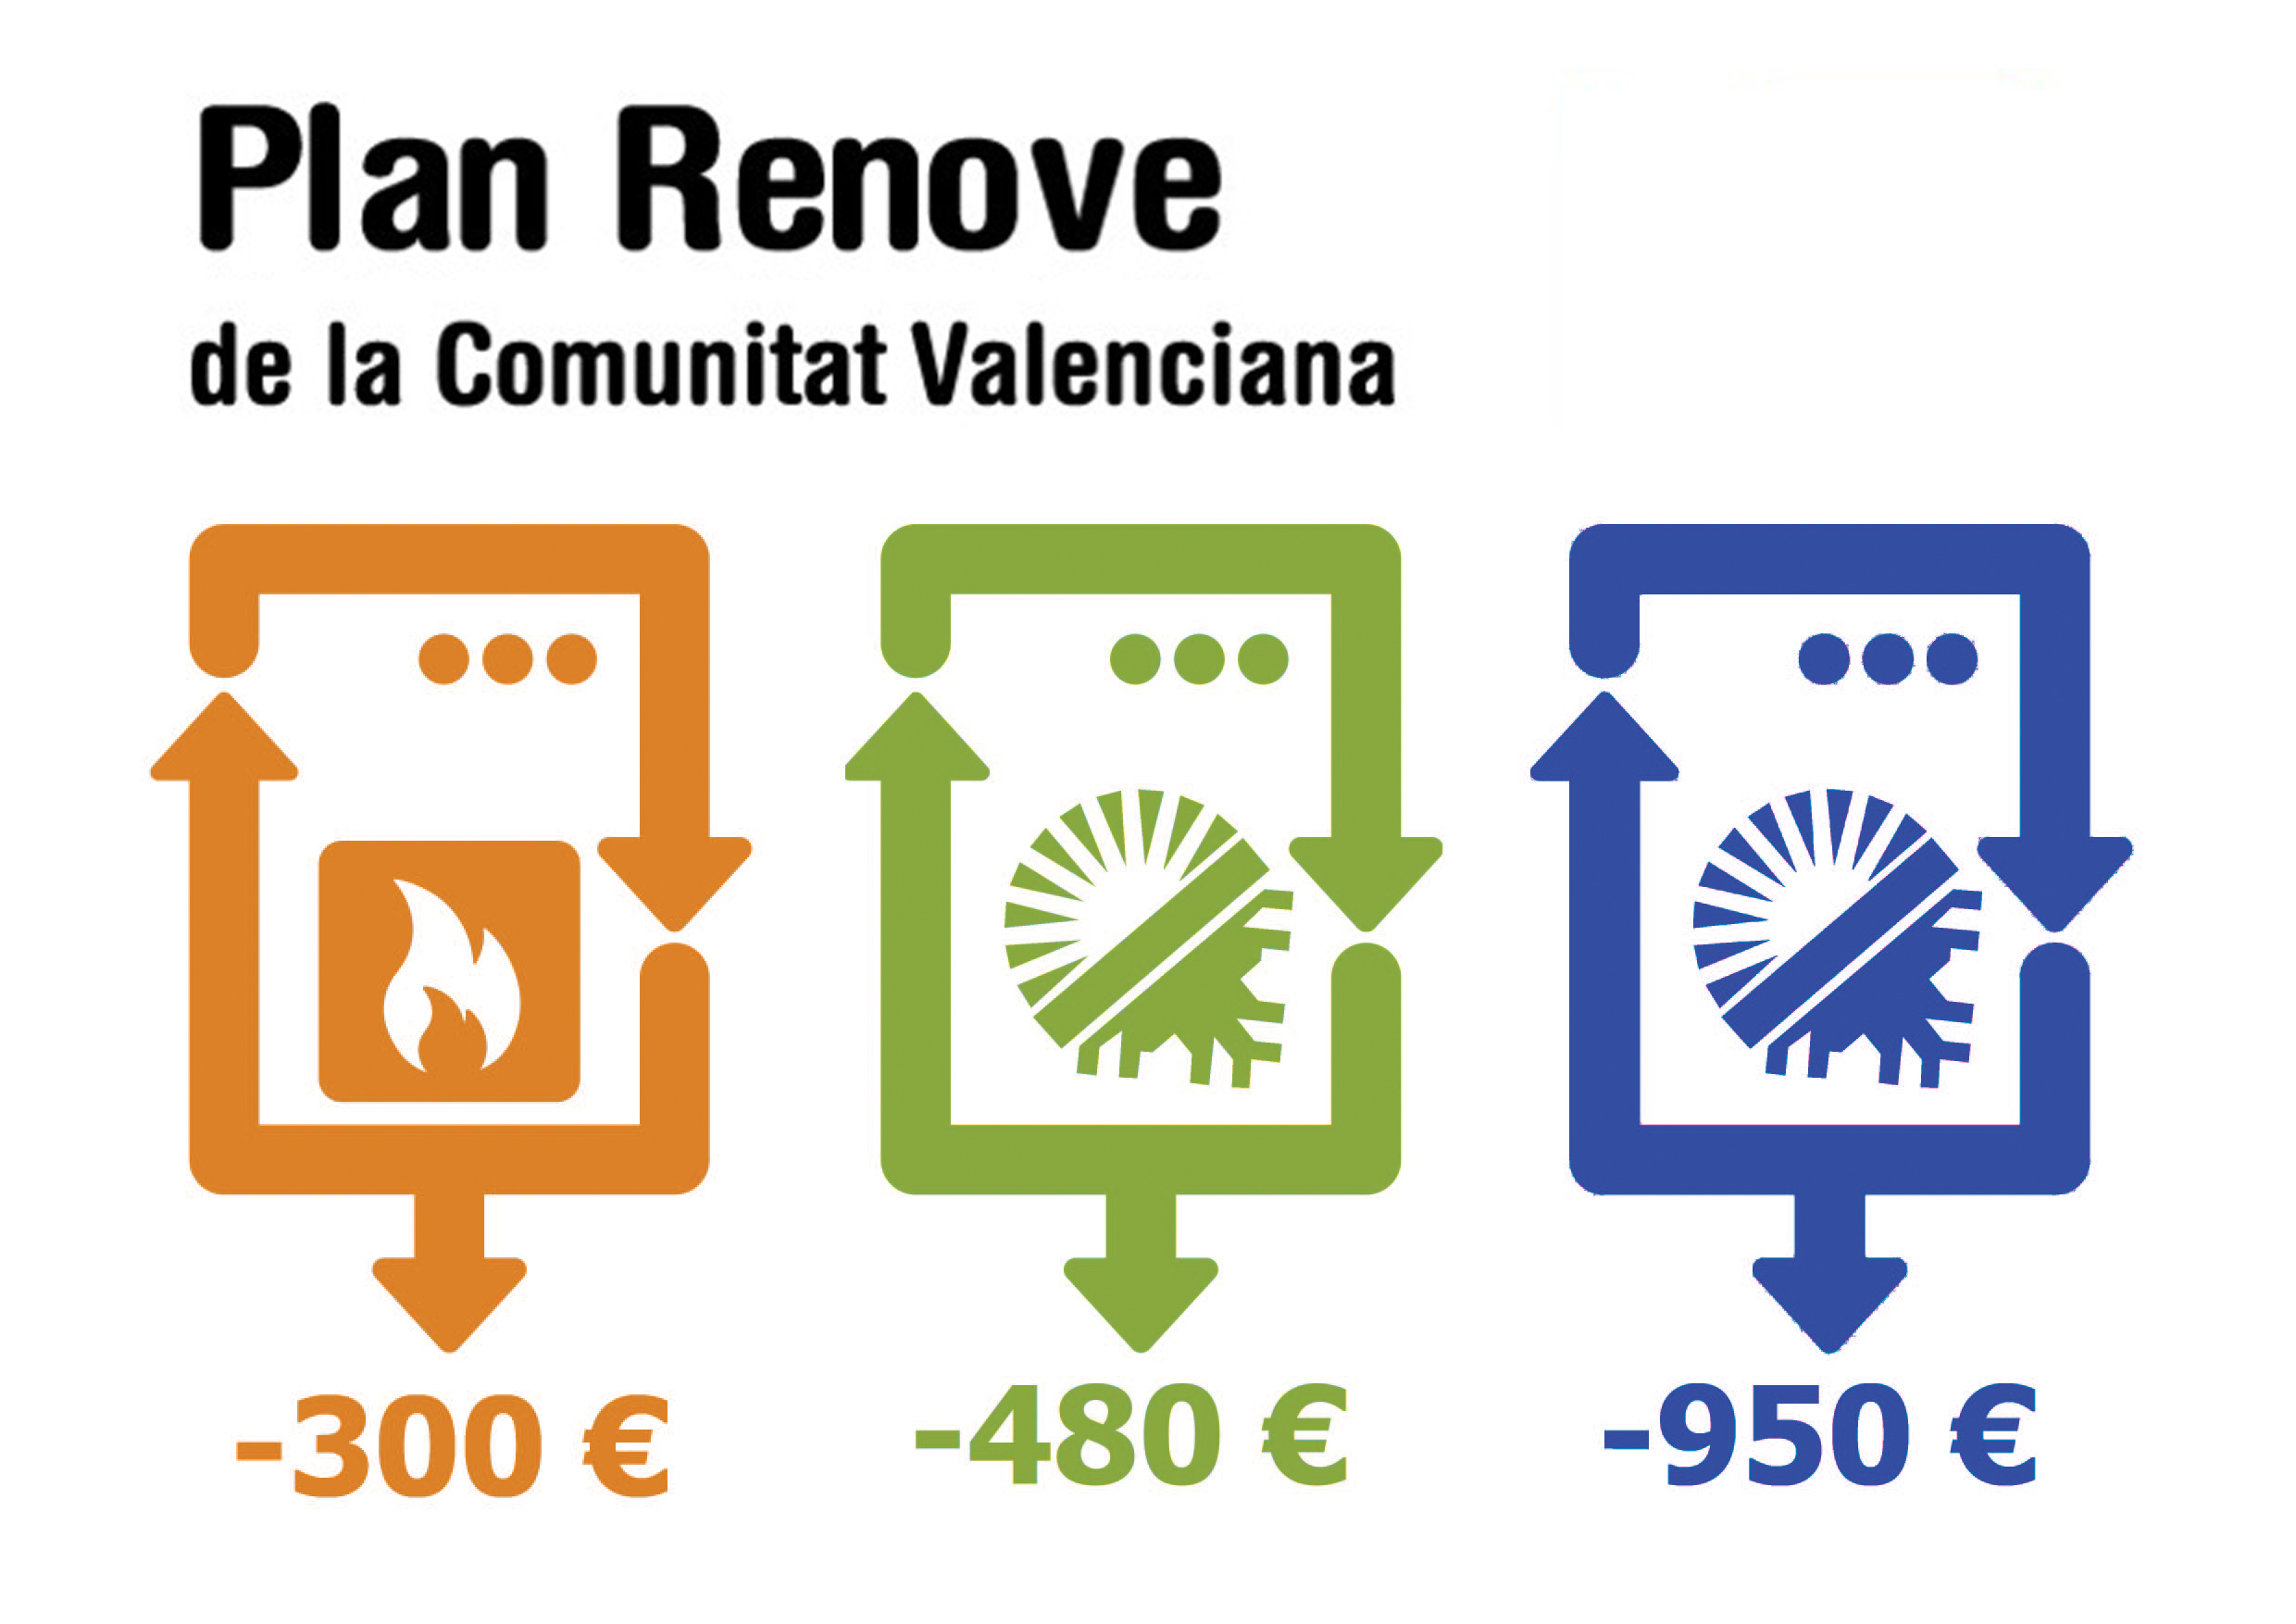 Plan Renove Calderas Valencia 2019